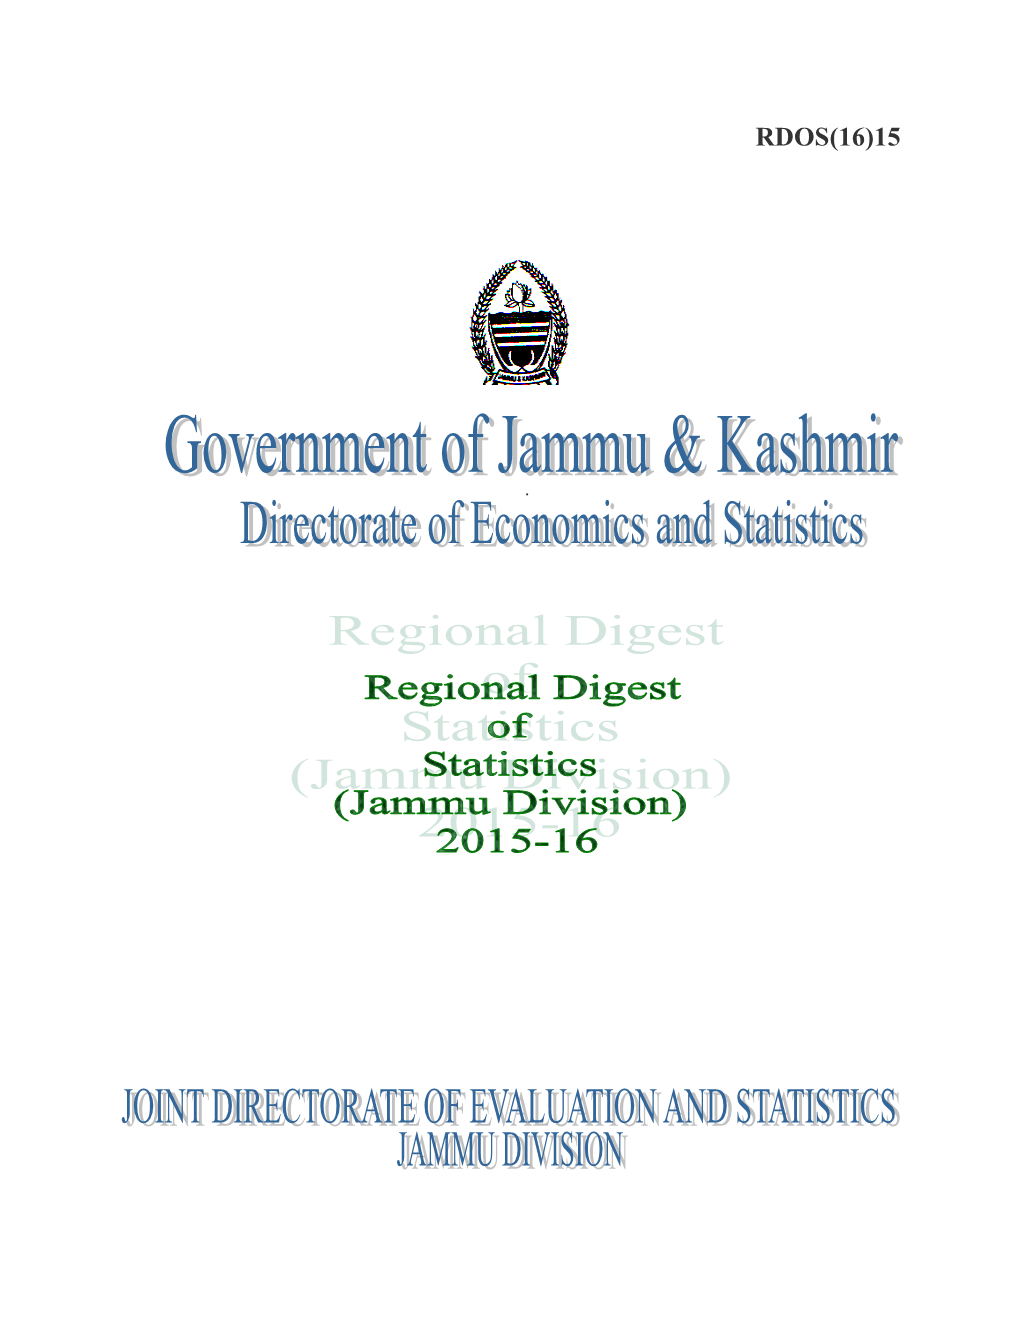 Regional Digest of Statistics 2015-16